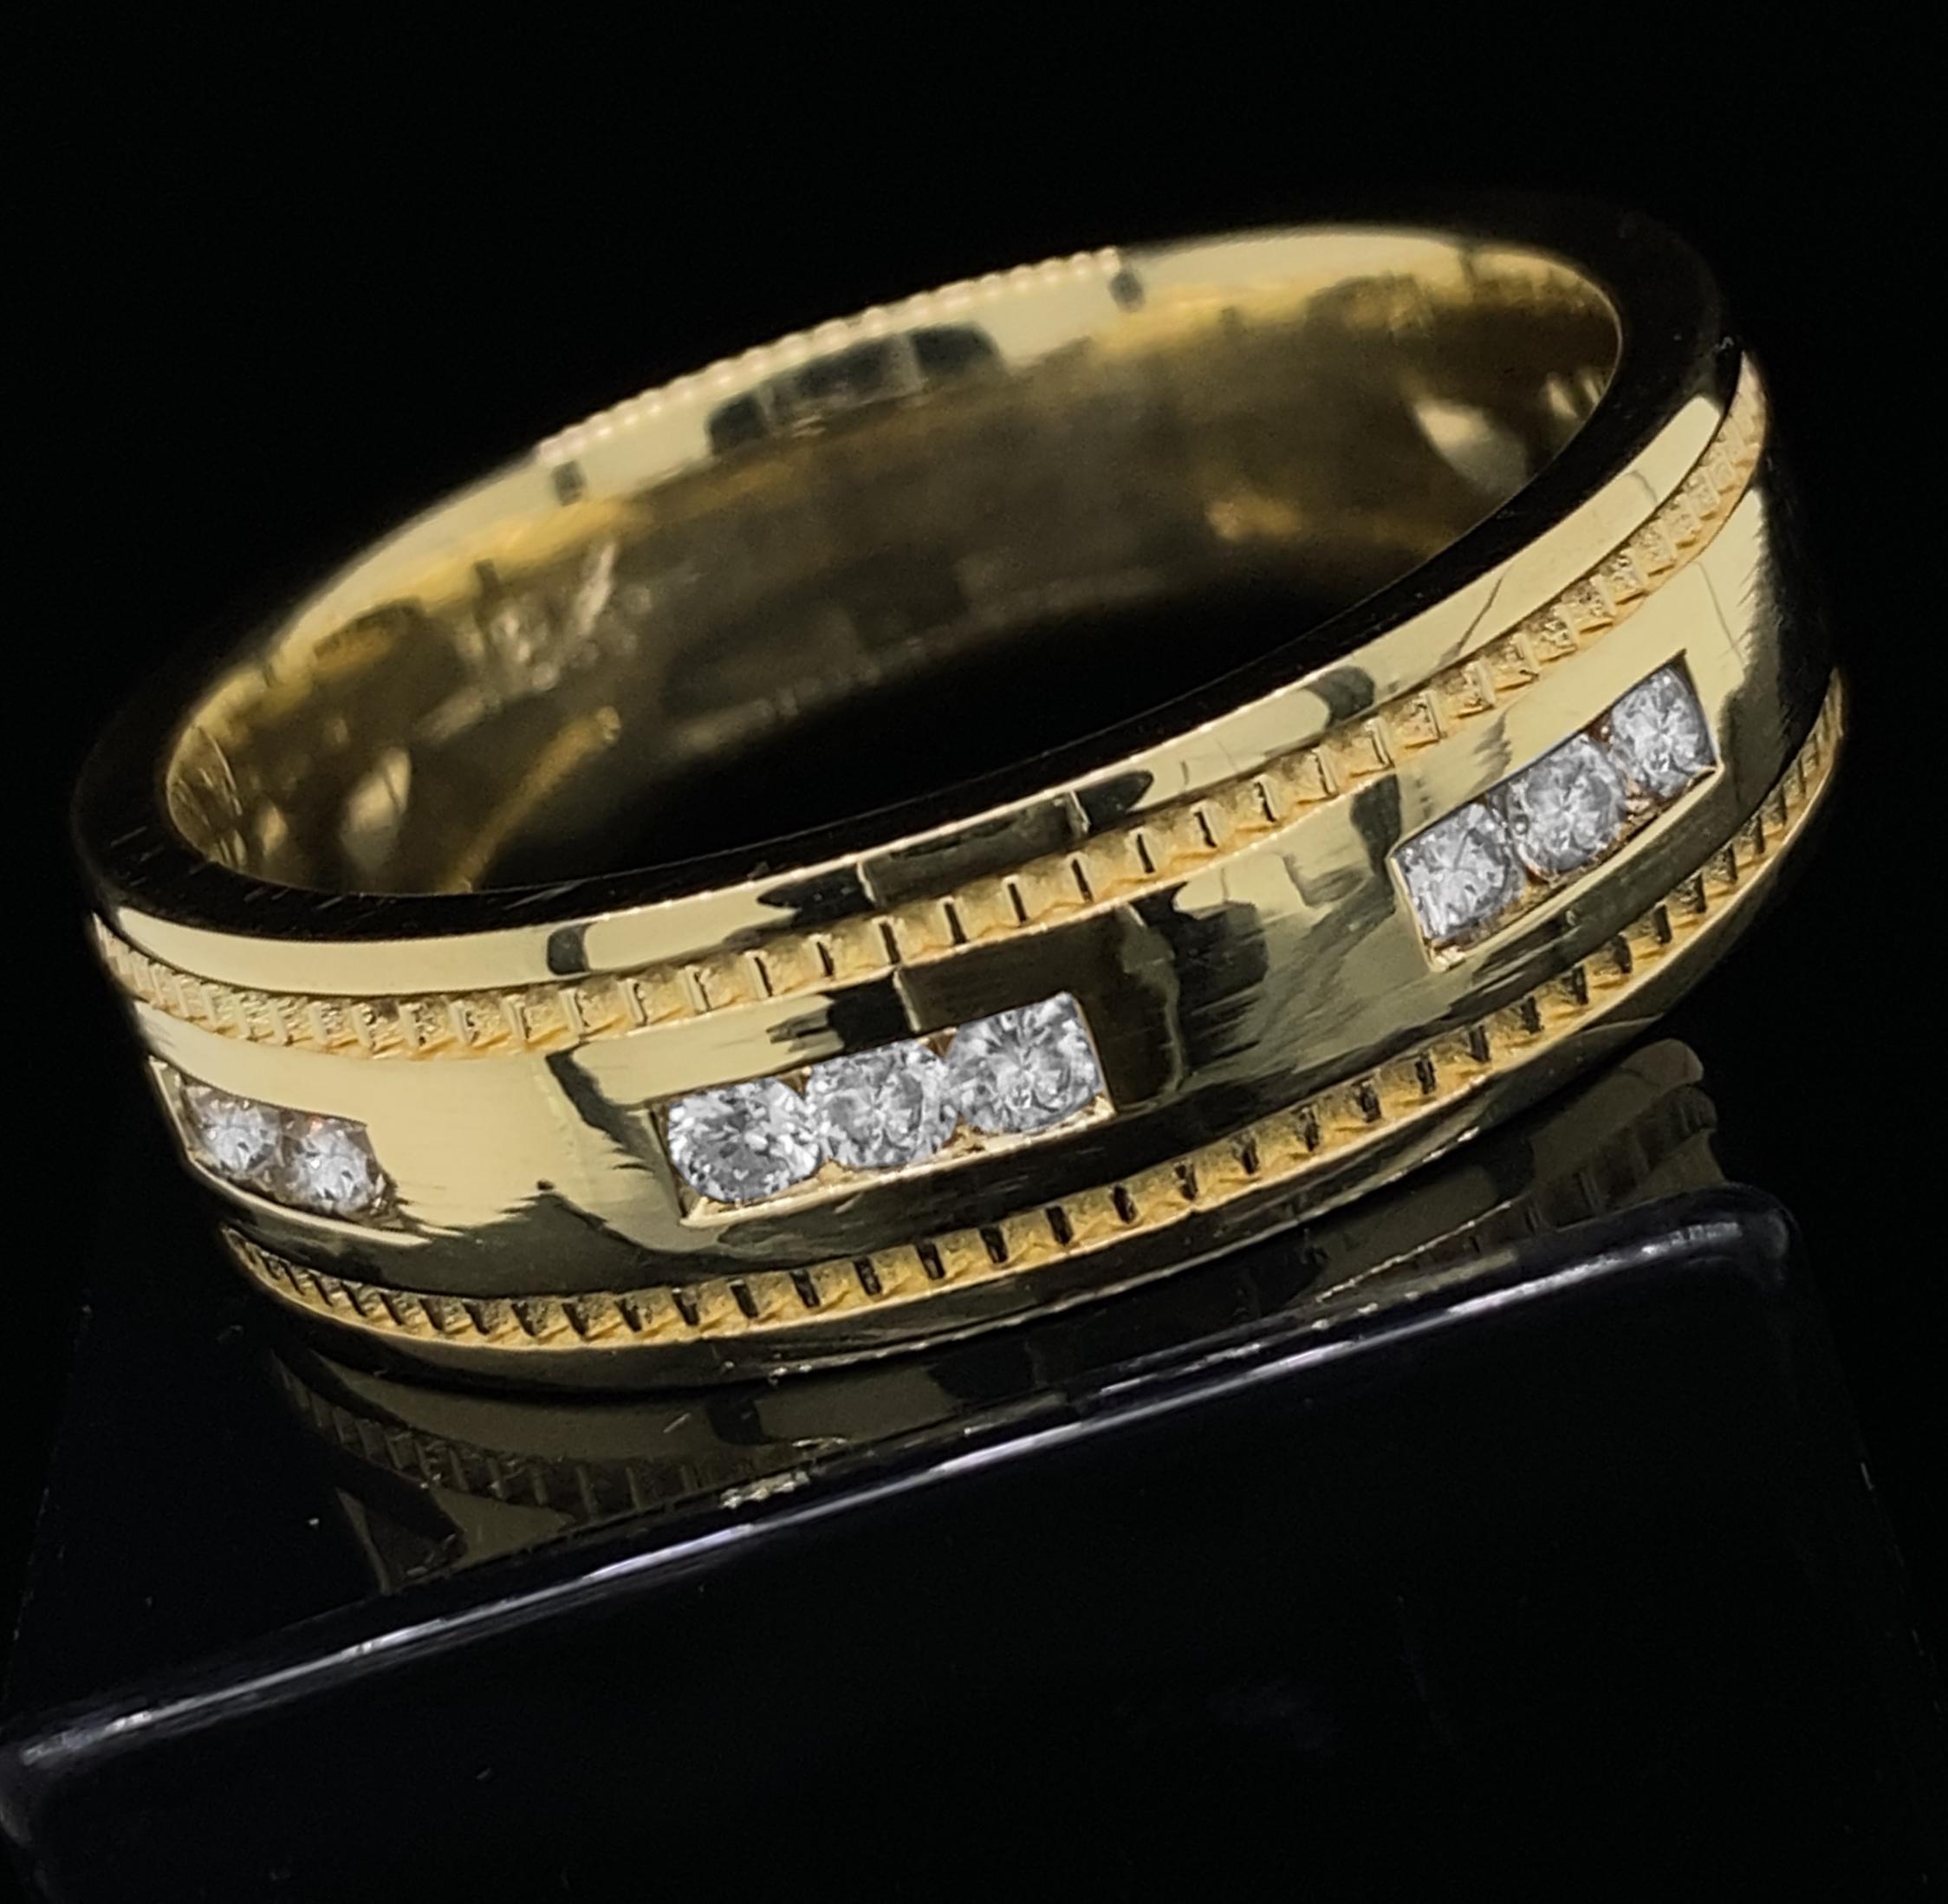 Dieser Ring wurde für einen Kunden angefertigt, der, nachdem er ihn gesehen hatte, beschloss, dass er die 